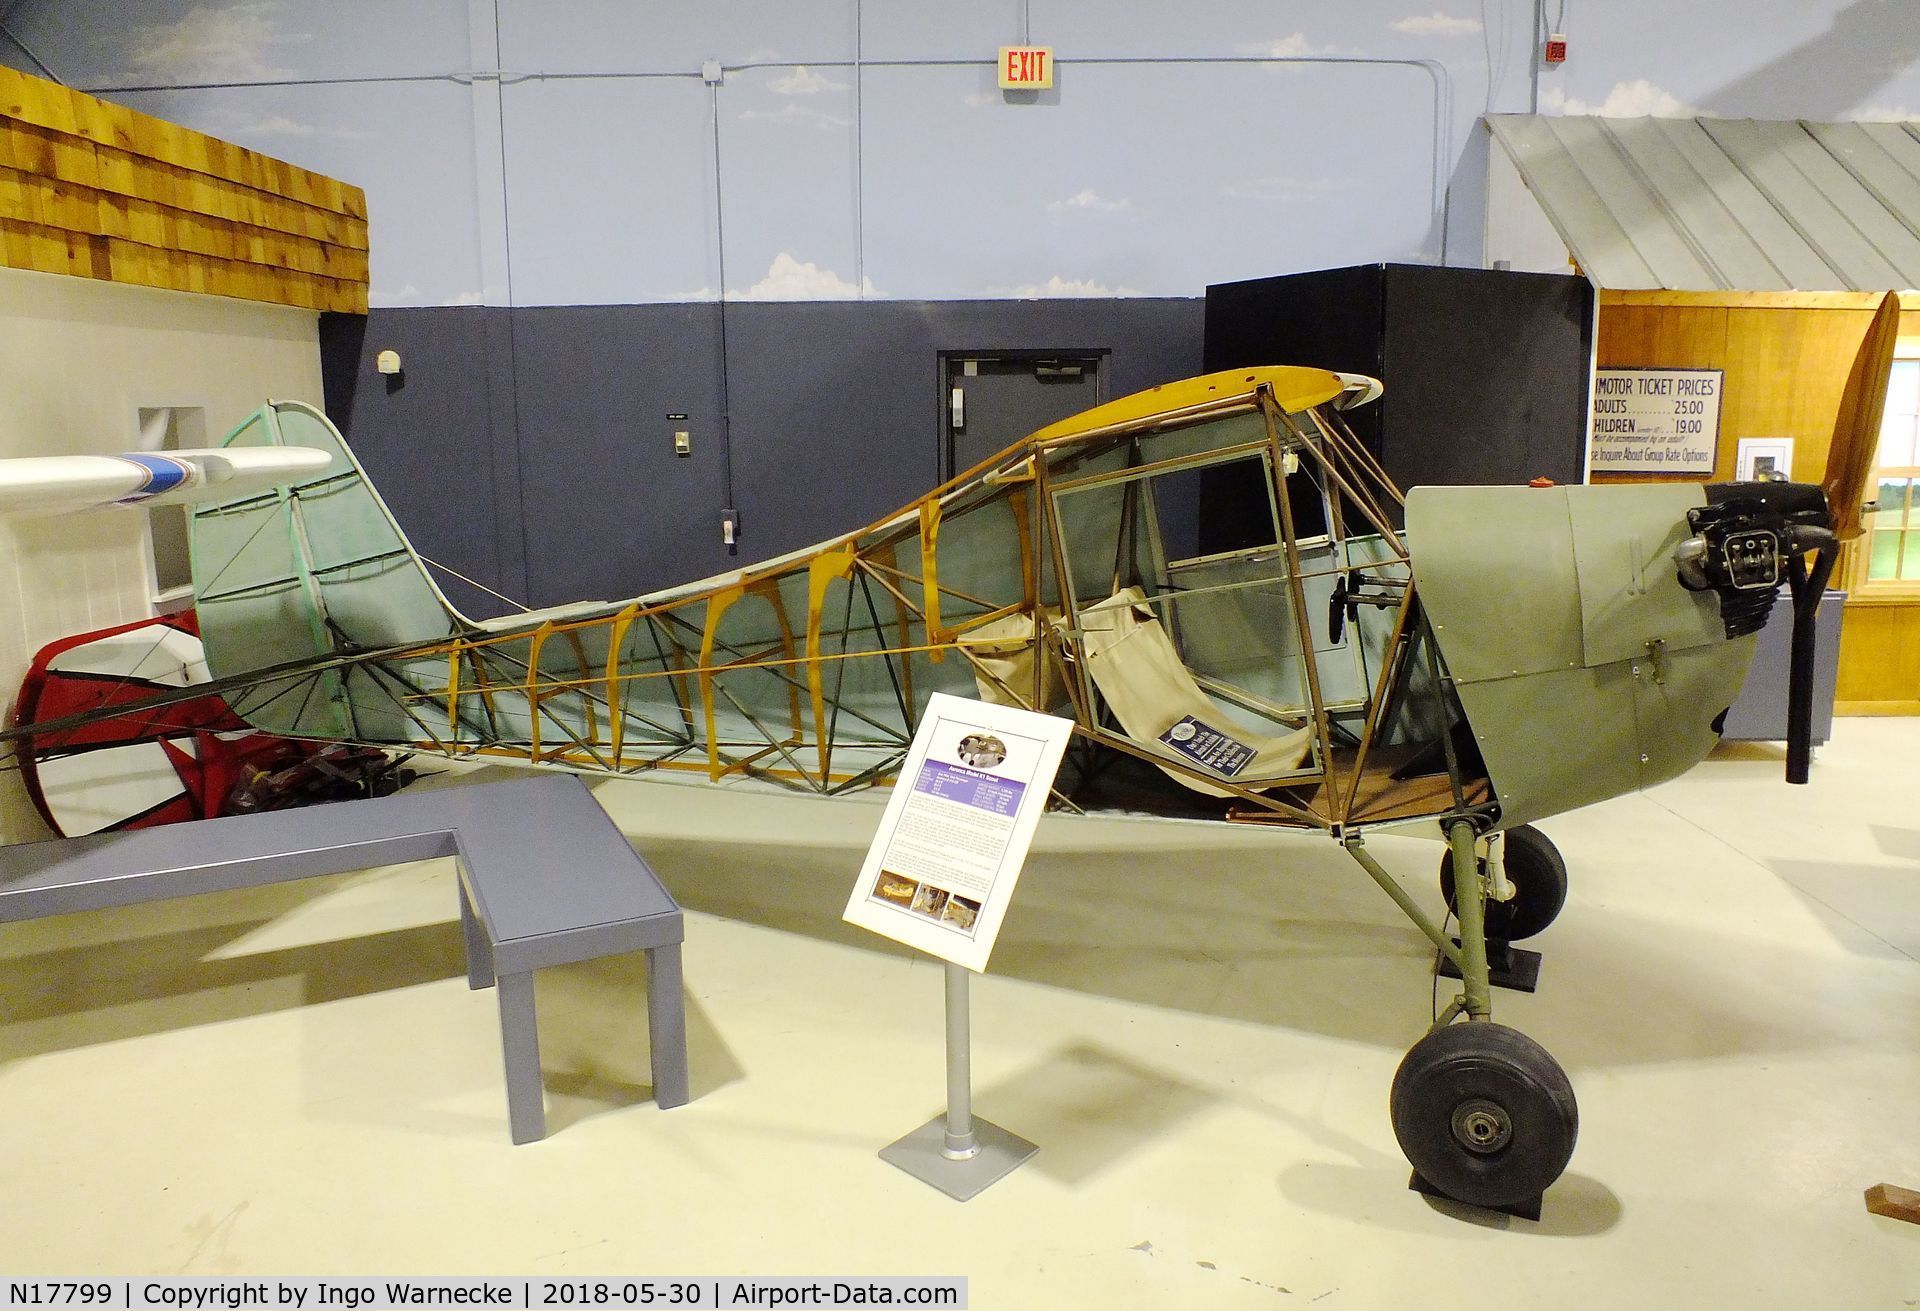 N17799, Aeronca K C/N K-66, Aeronca K 1 Scout (minus wings and starboard outer skin) at the Southern Museum of Flight, Birmingham AL